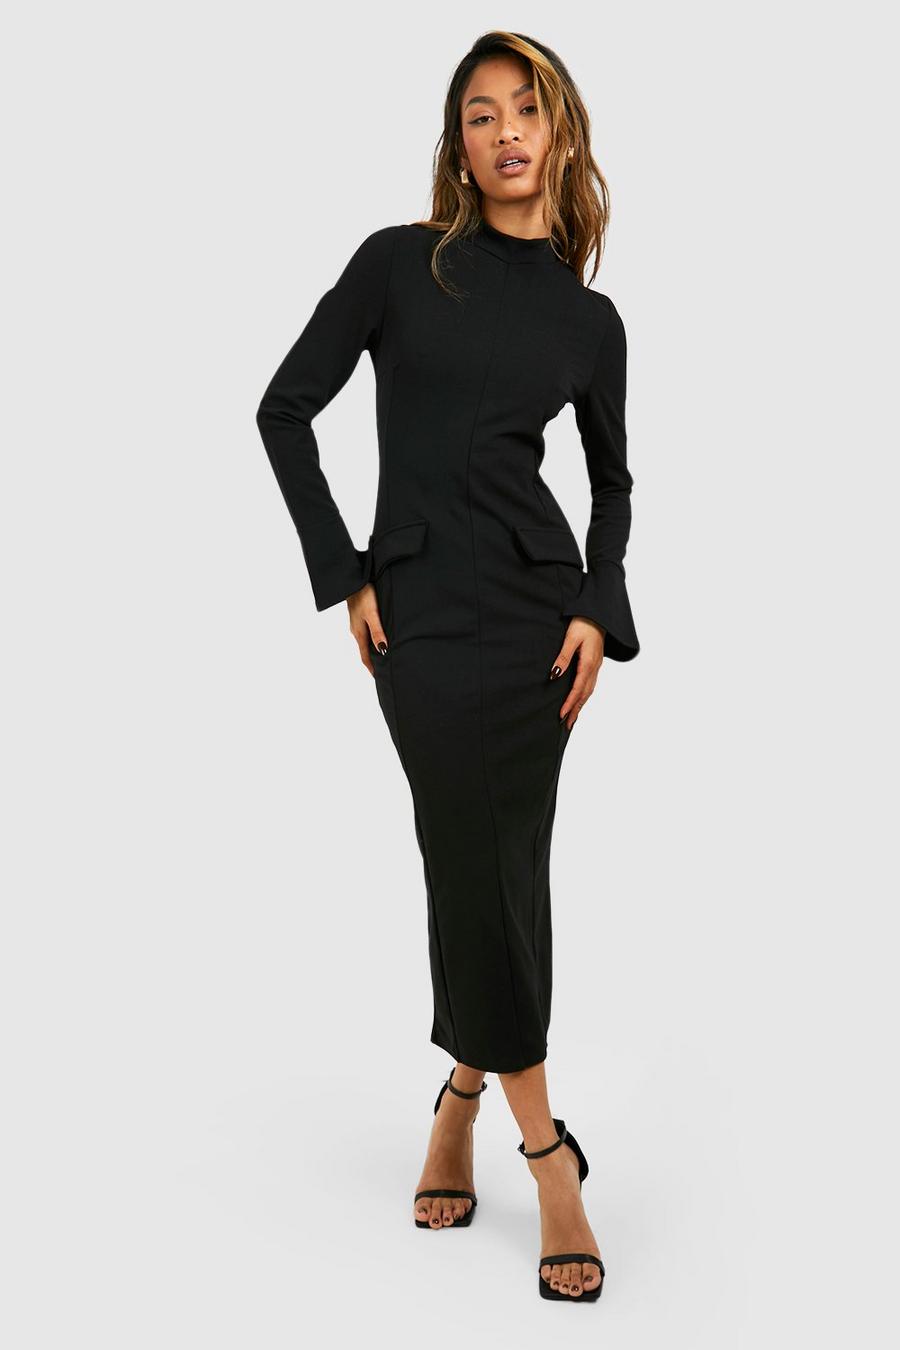 Black Crepe High Neck Pocket Detail Midaxi Dress